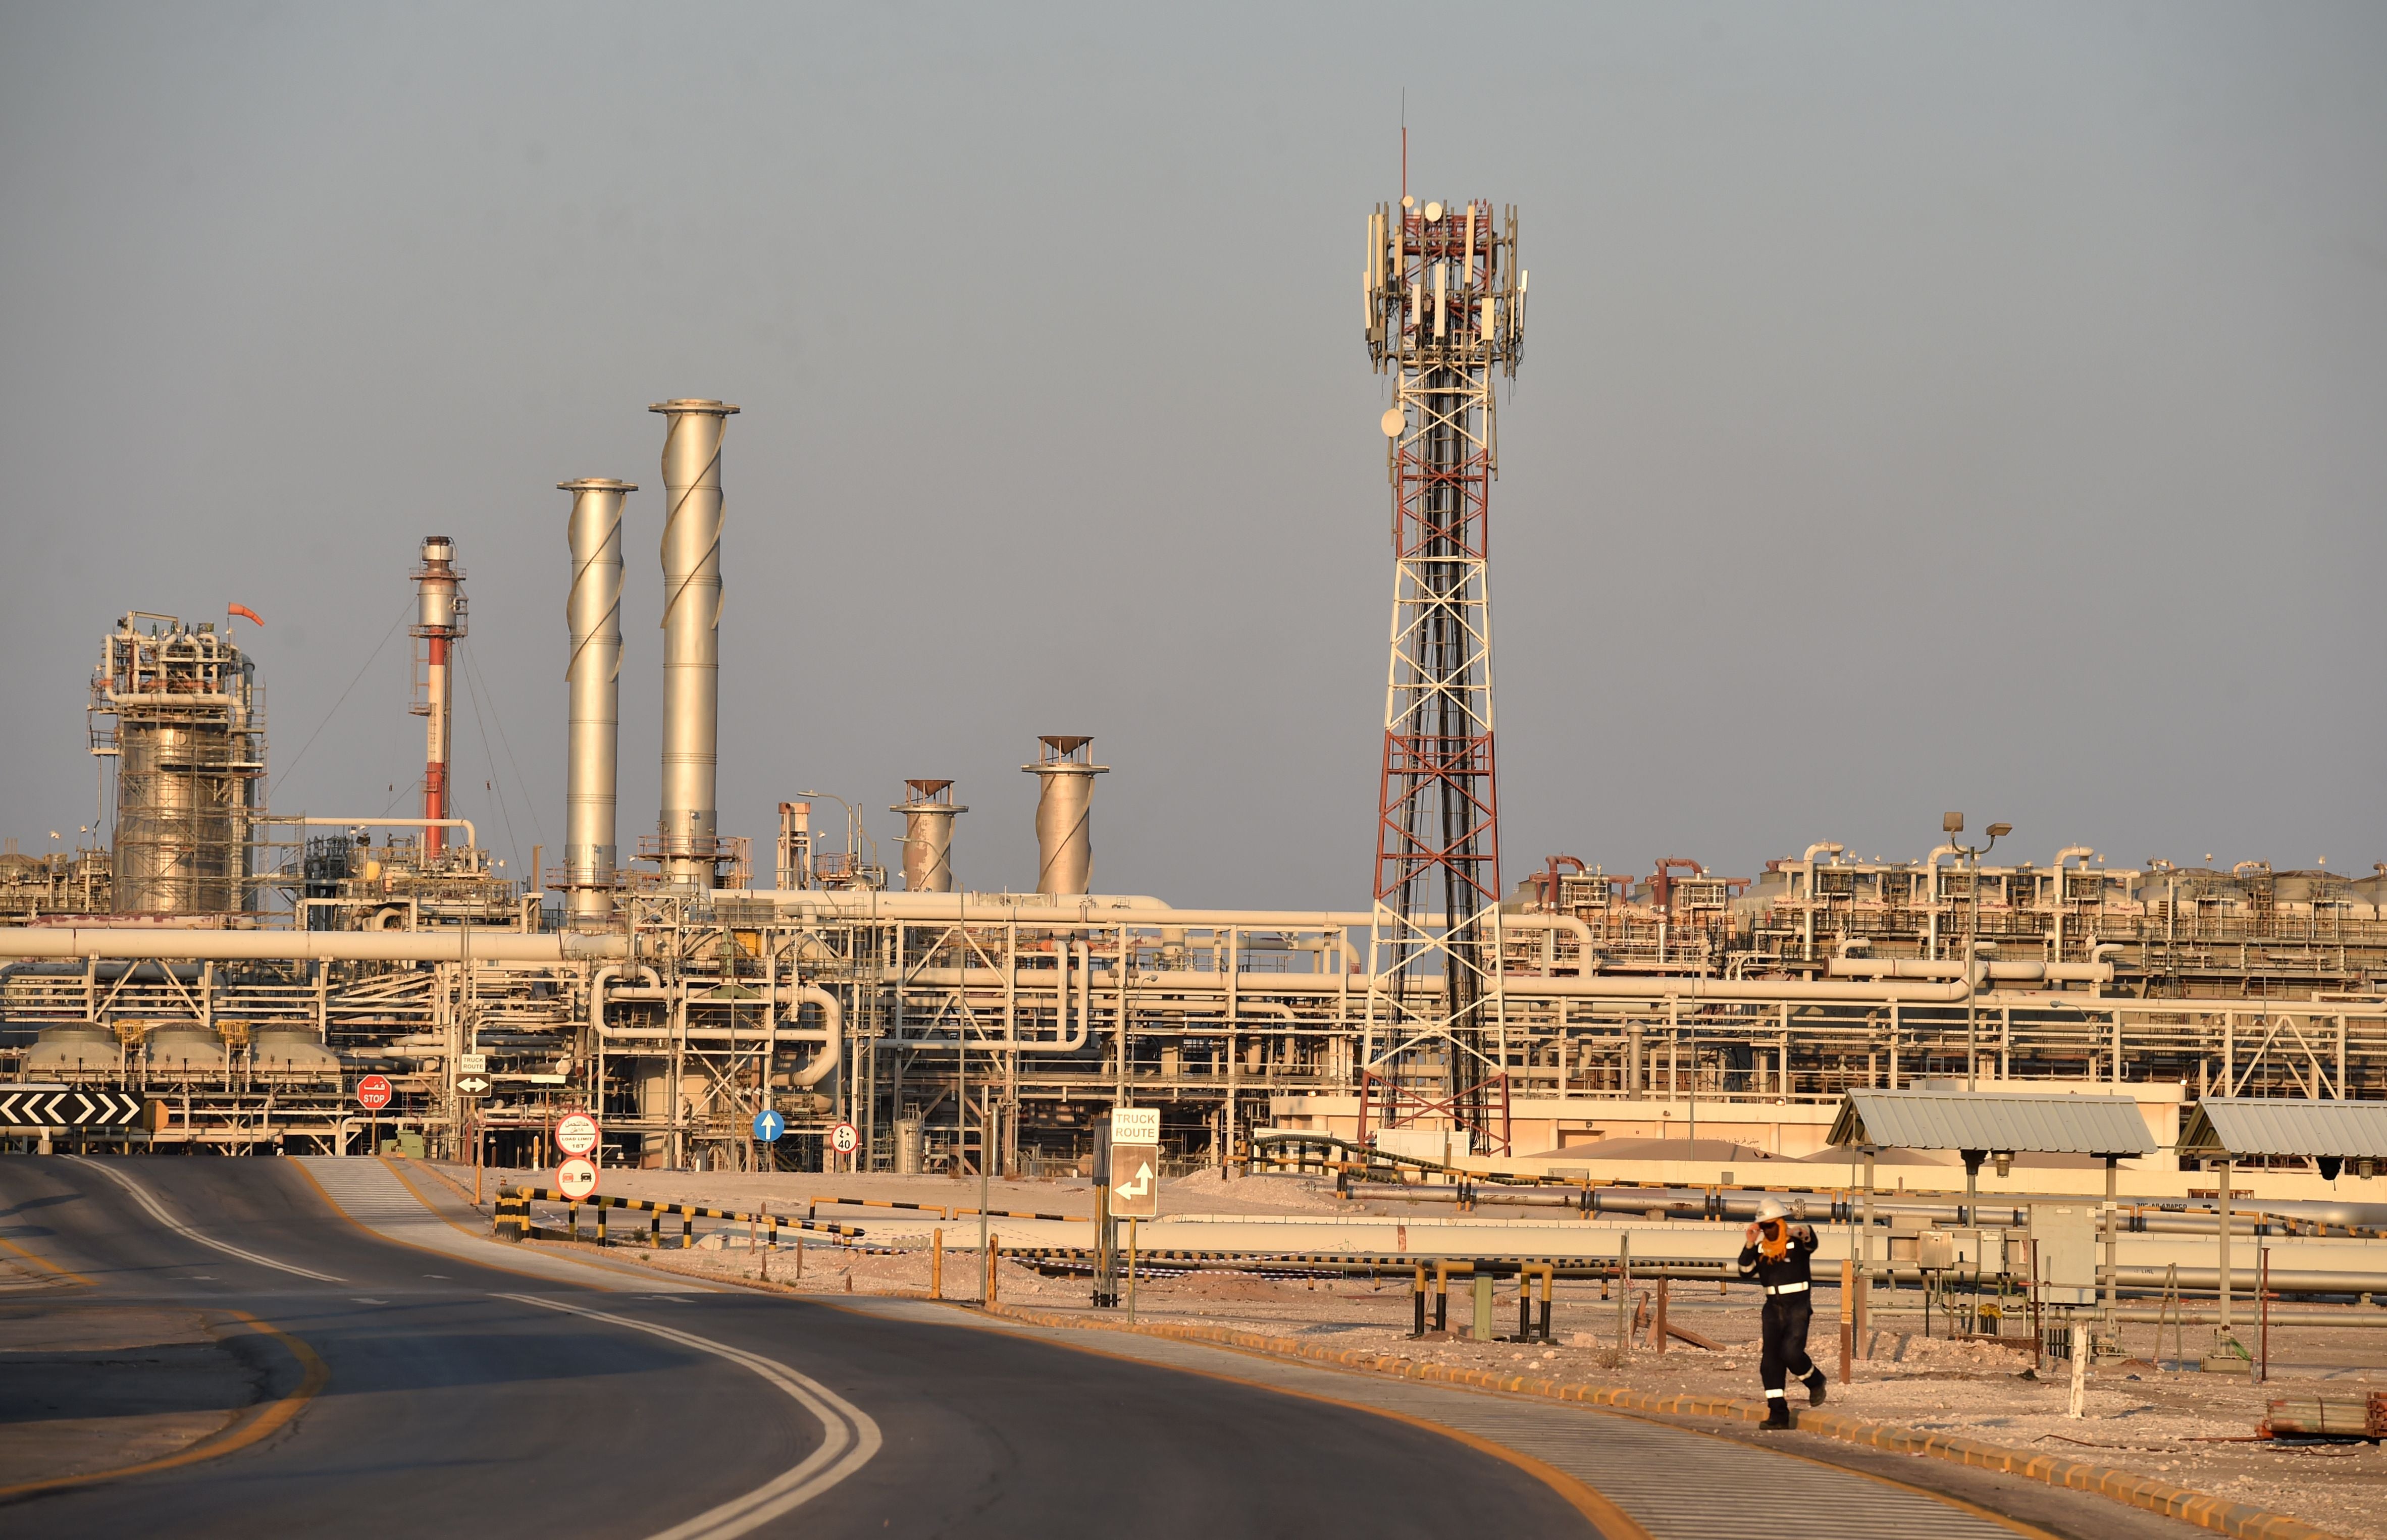 Saudi Aramco’s Abqaiq oil-processing plant